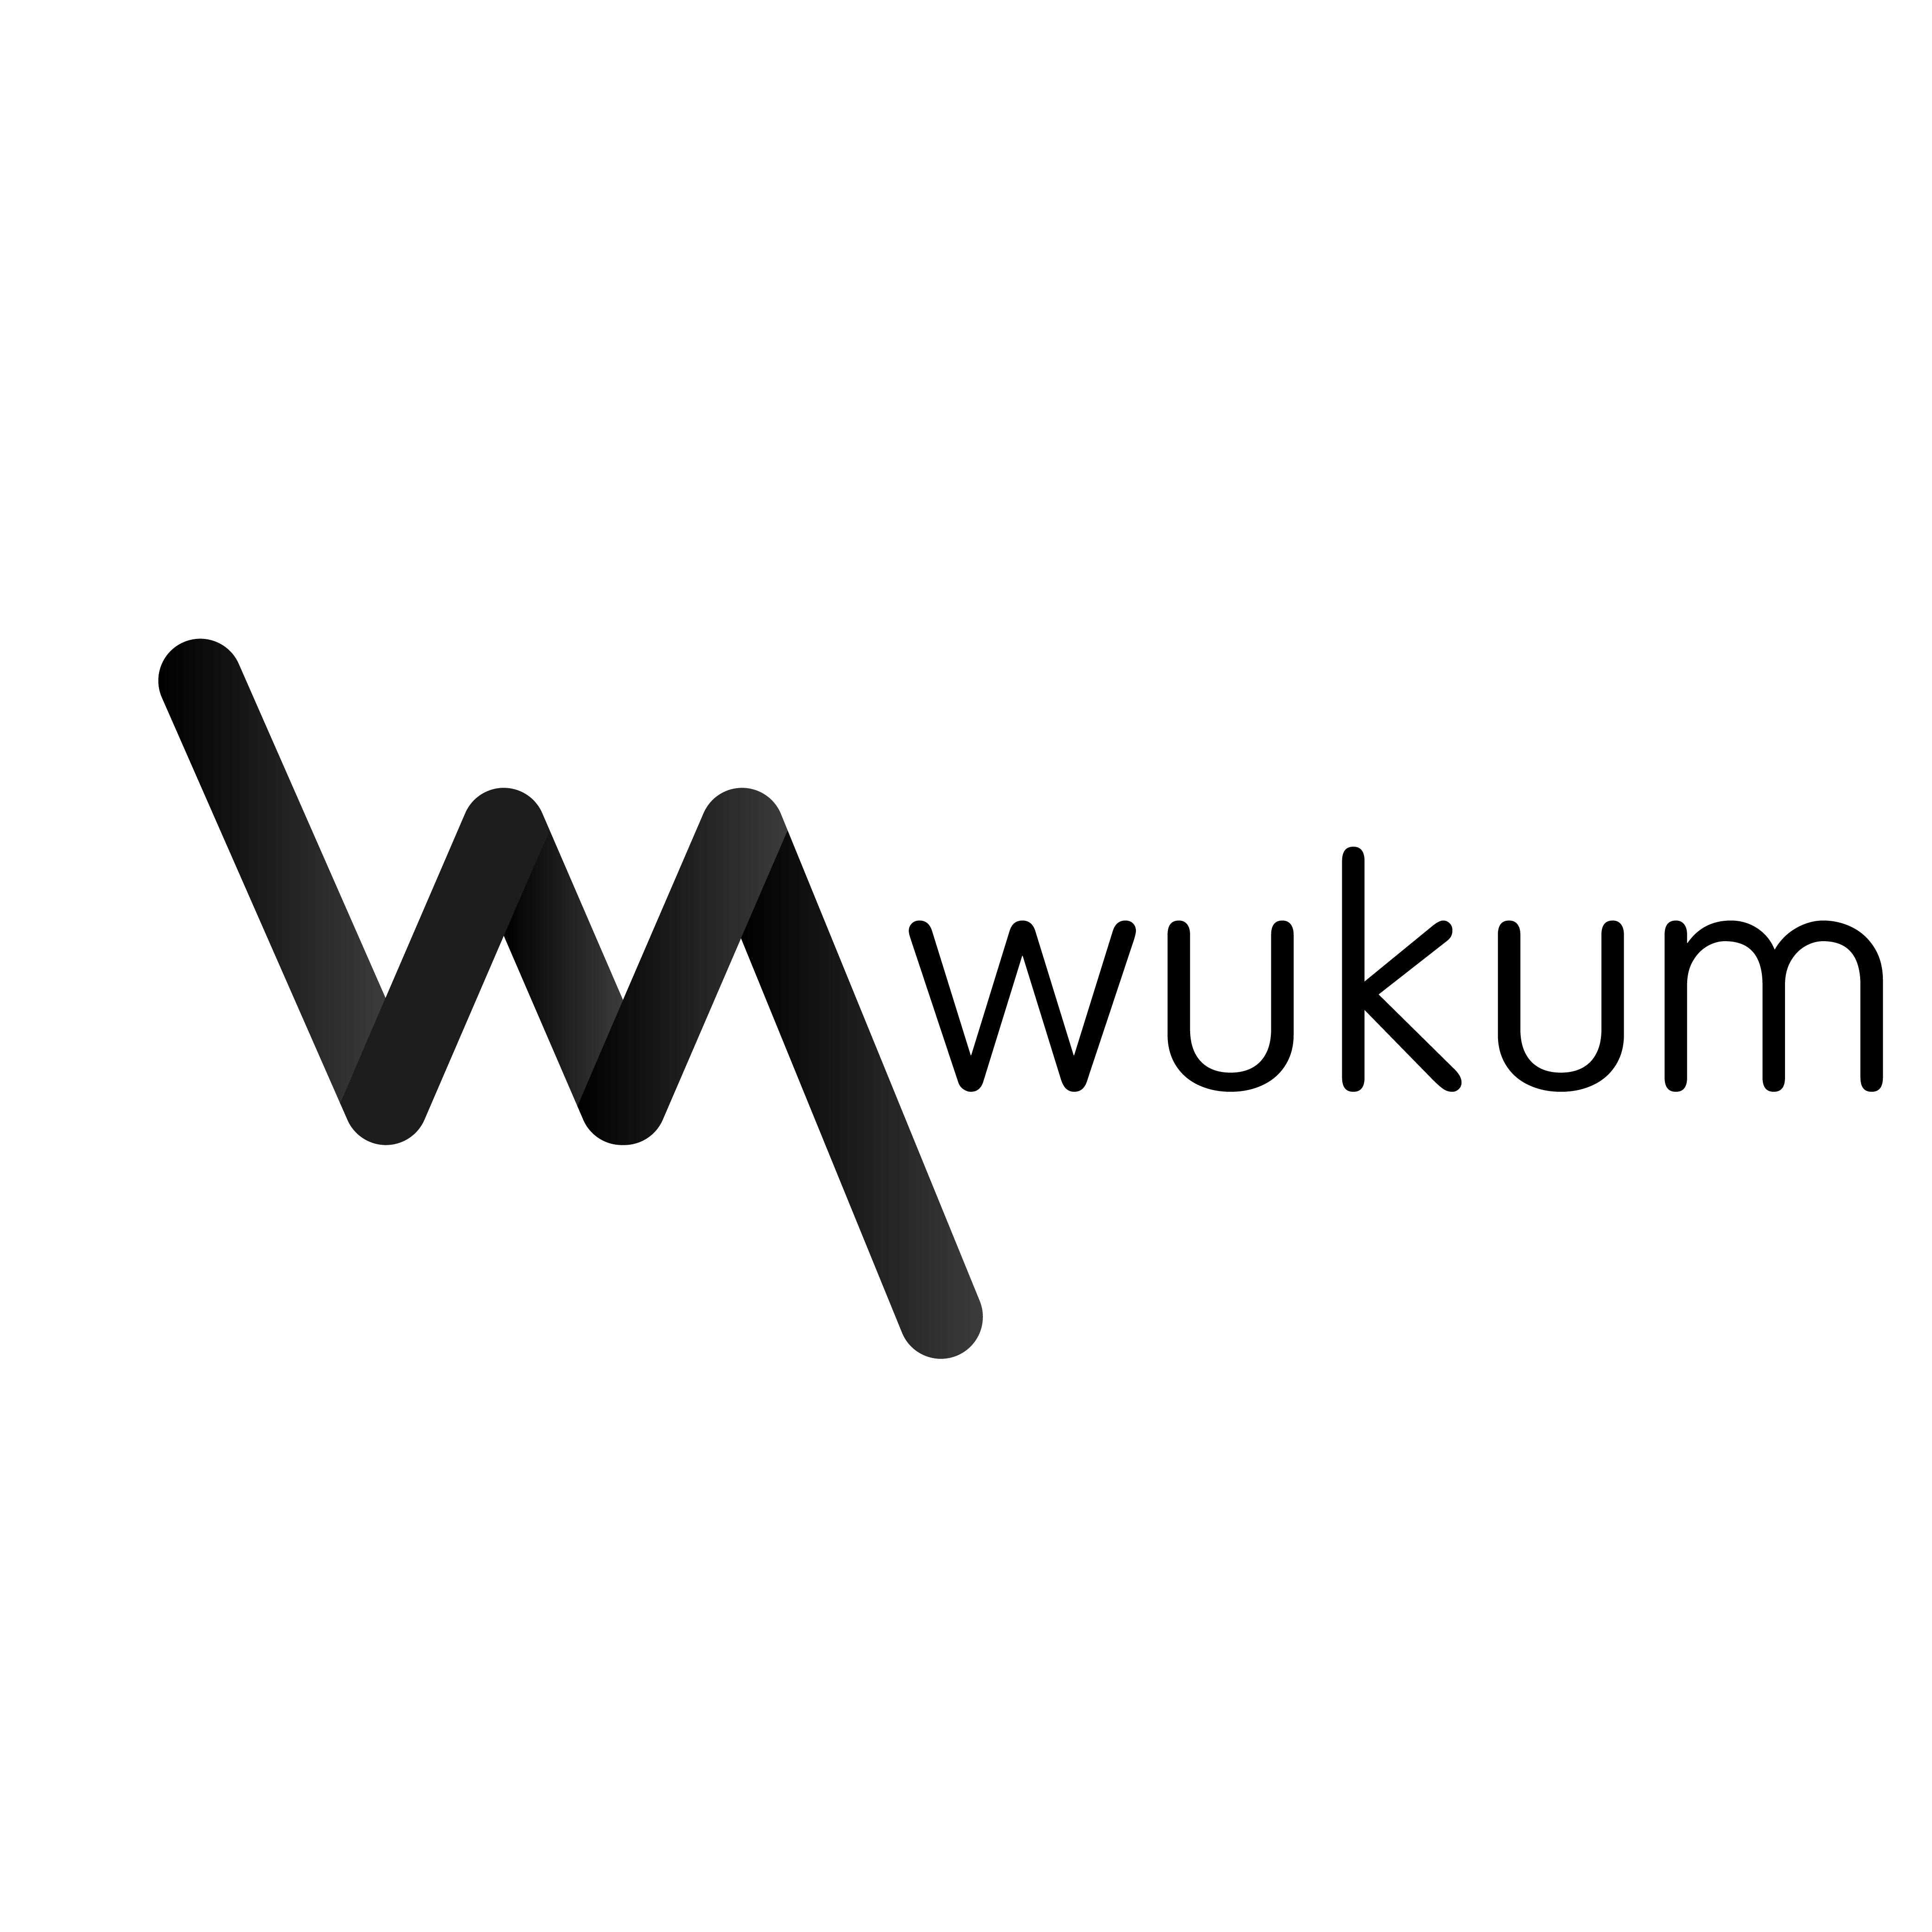 wukum – Wukum